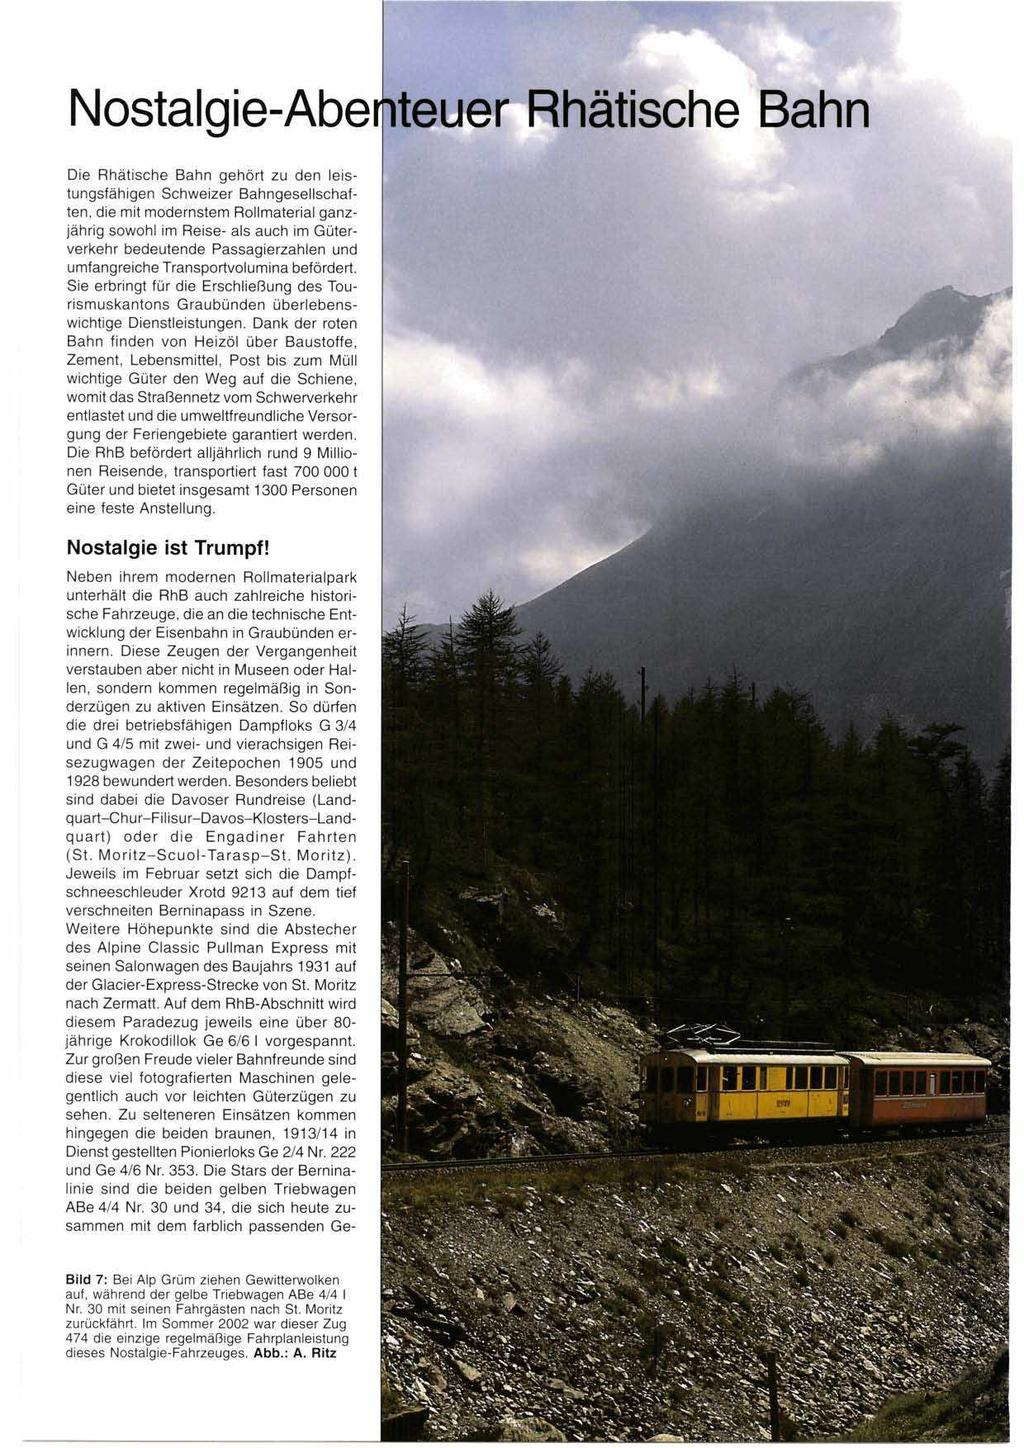 Nostalgie-Abe Die Rhätische Bahn gehört zu den leistungsfähigen Schweizer Bahngesellschaften, die mit modernstem Rollmaterial ganzjährig sowohl im Reise- als auch im Güterverkehr bedeutende